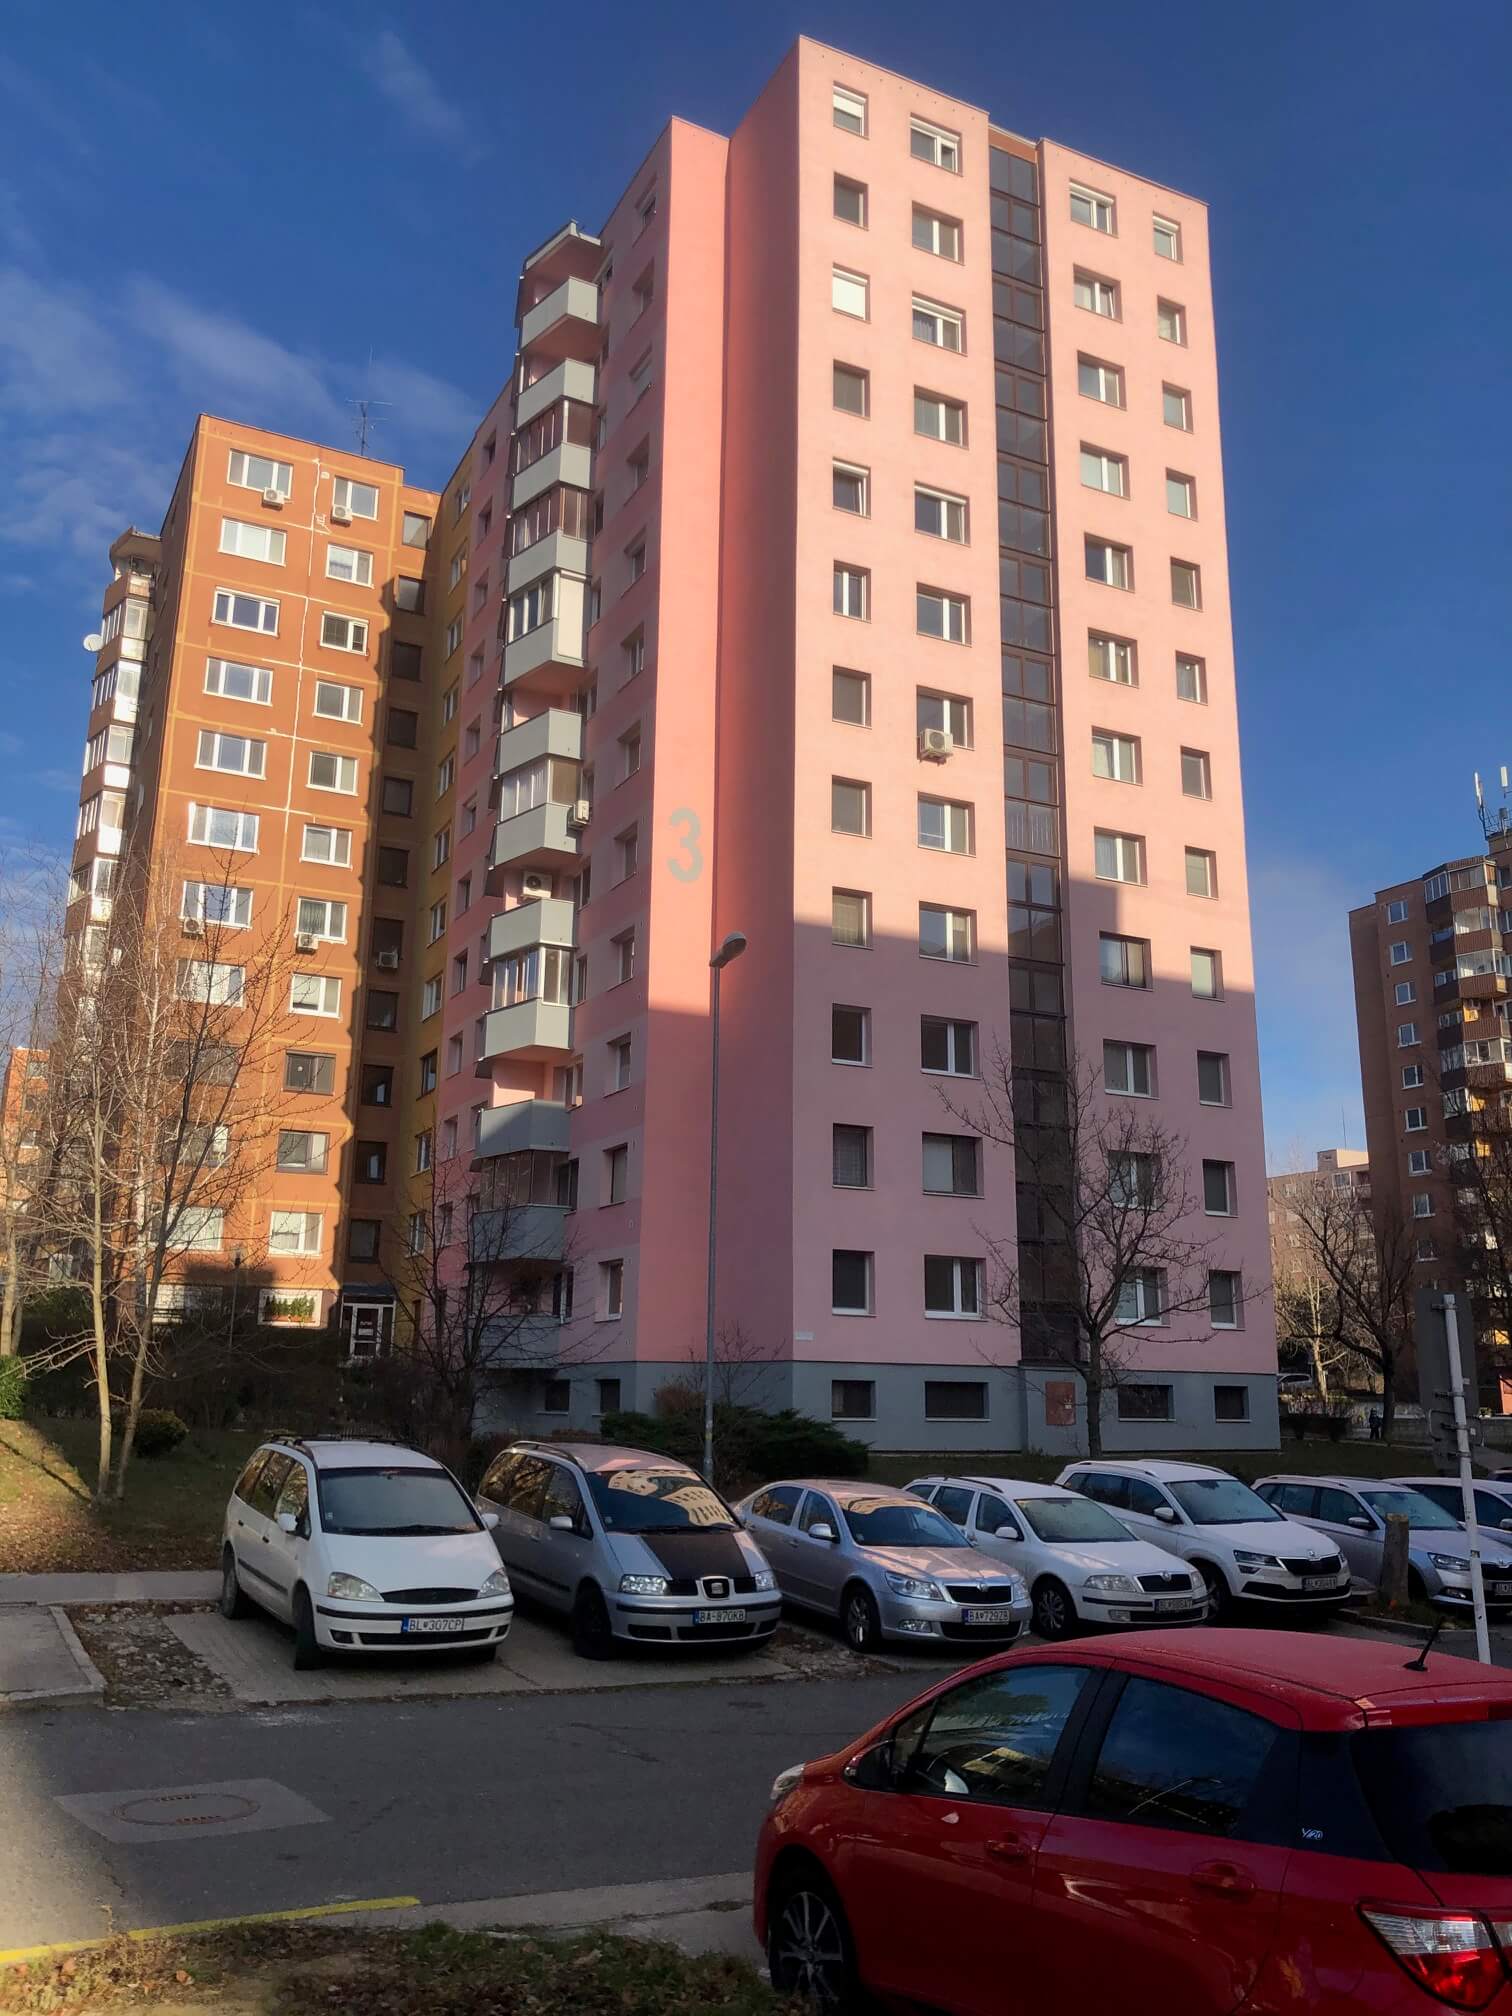 Predané: Exkluzívne na predaj 3 izbový byt, Devínska Nová Ves, Jána Poničana 3, 65m2, balkon 4m2,klimatizácia-5